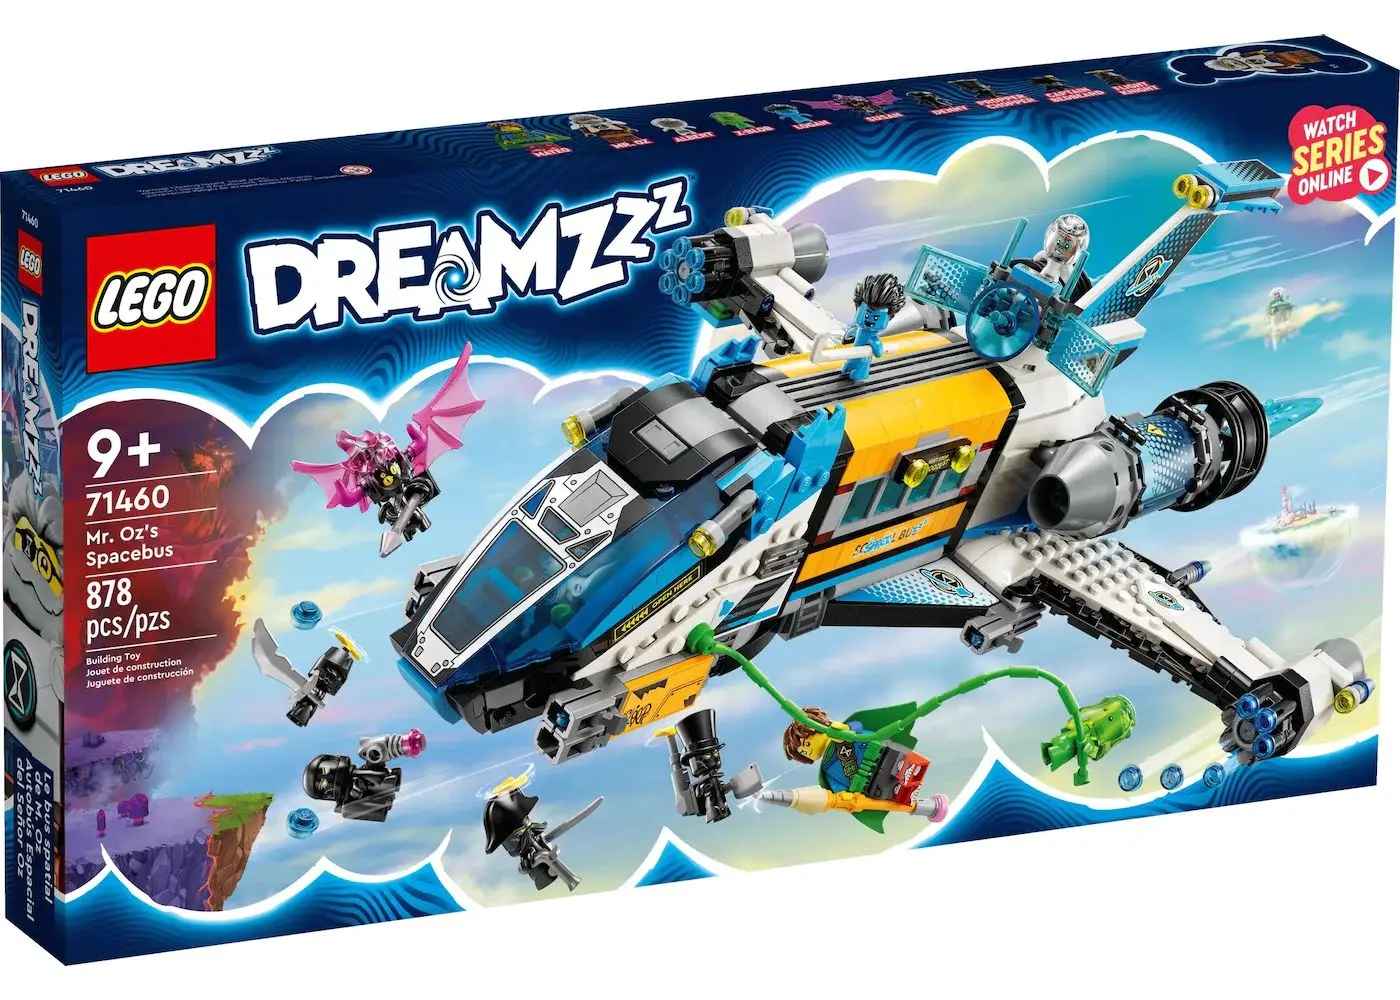 Il mondo dei sogni prende vita con la nuova linea Lego Dreamzzz